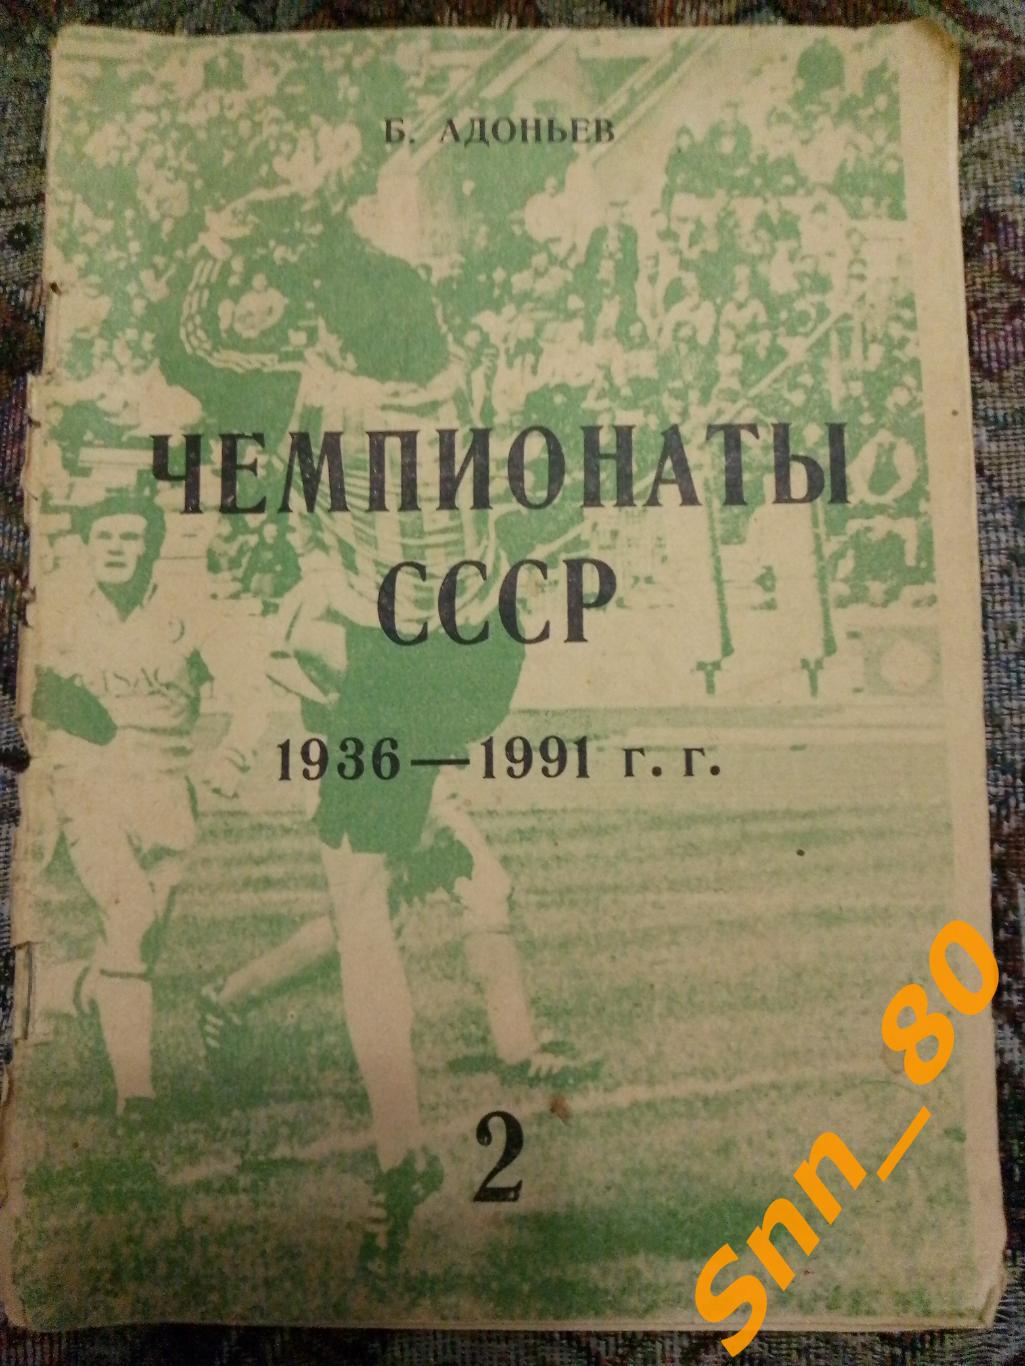 2 Чемпионаты СССР 1947-1951 Часть 2 Б.И.Адоньев 1993 Москва